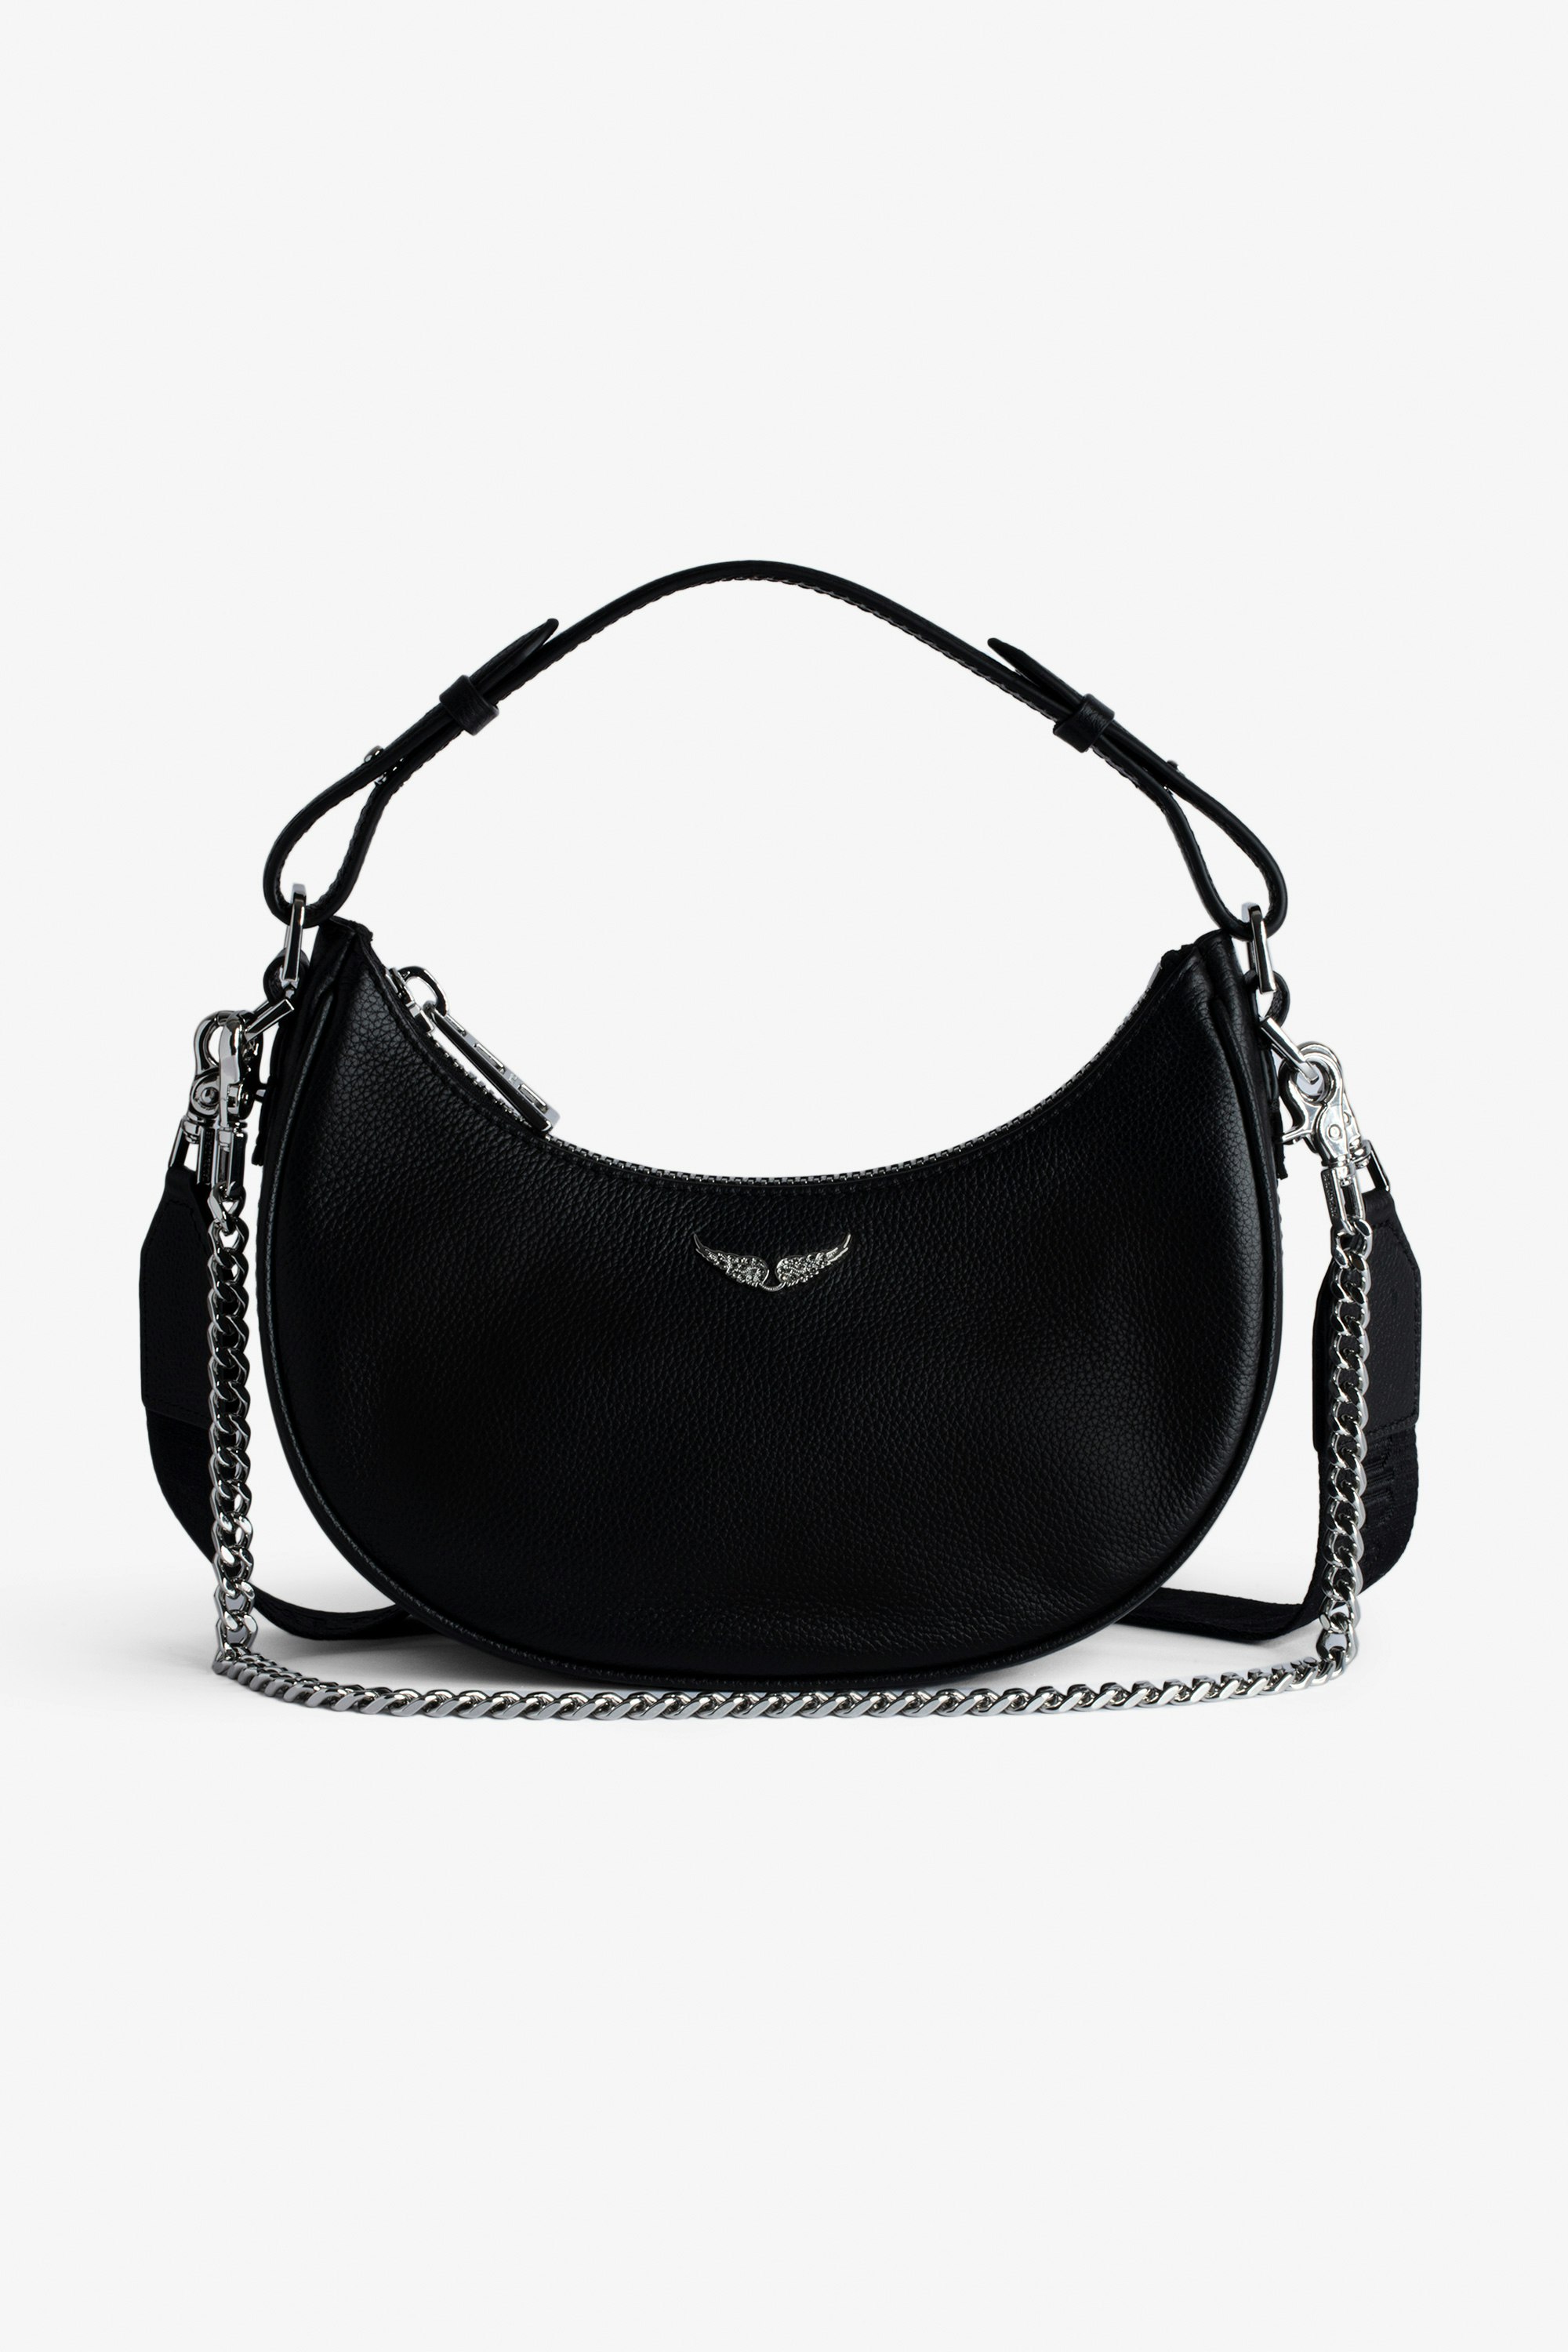 Tasche Moonrock Halbmondtasche für Damen aus schwarzem genarbtem Leder mit kurzem Henkel, Schulterriemen, Kette und Signature-Flügeln.